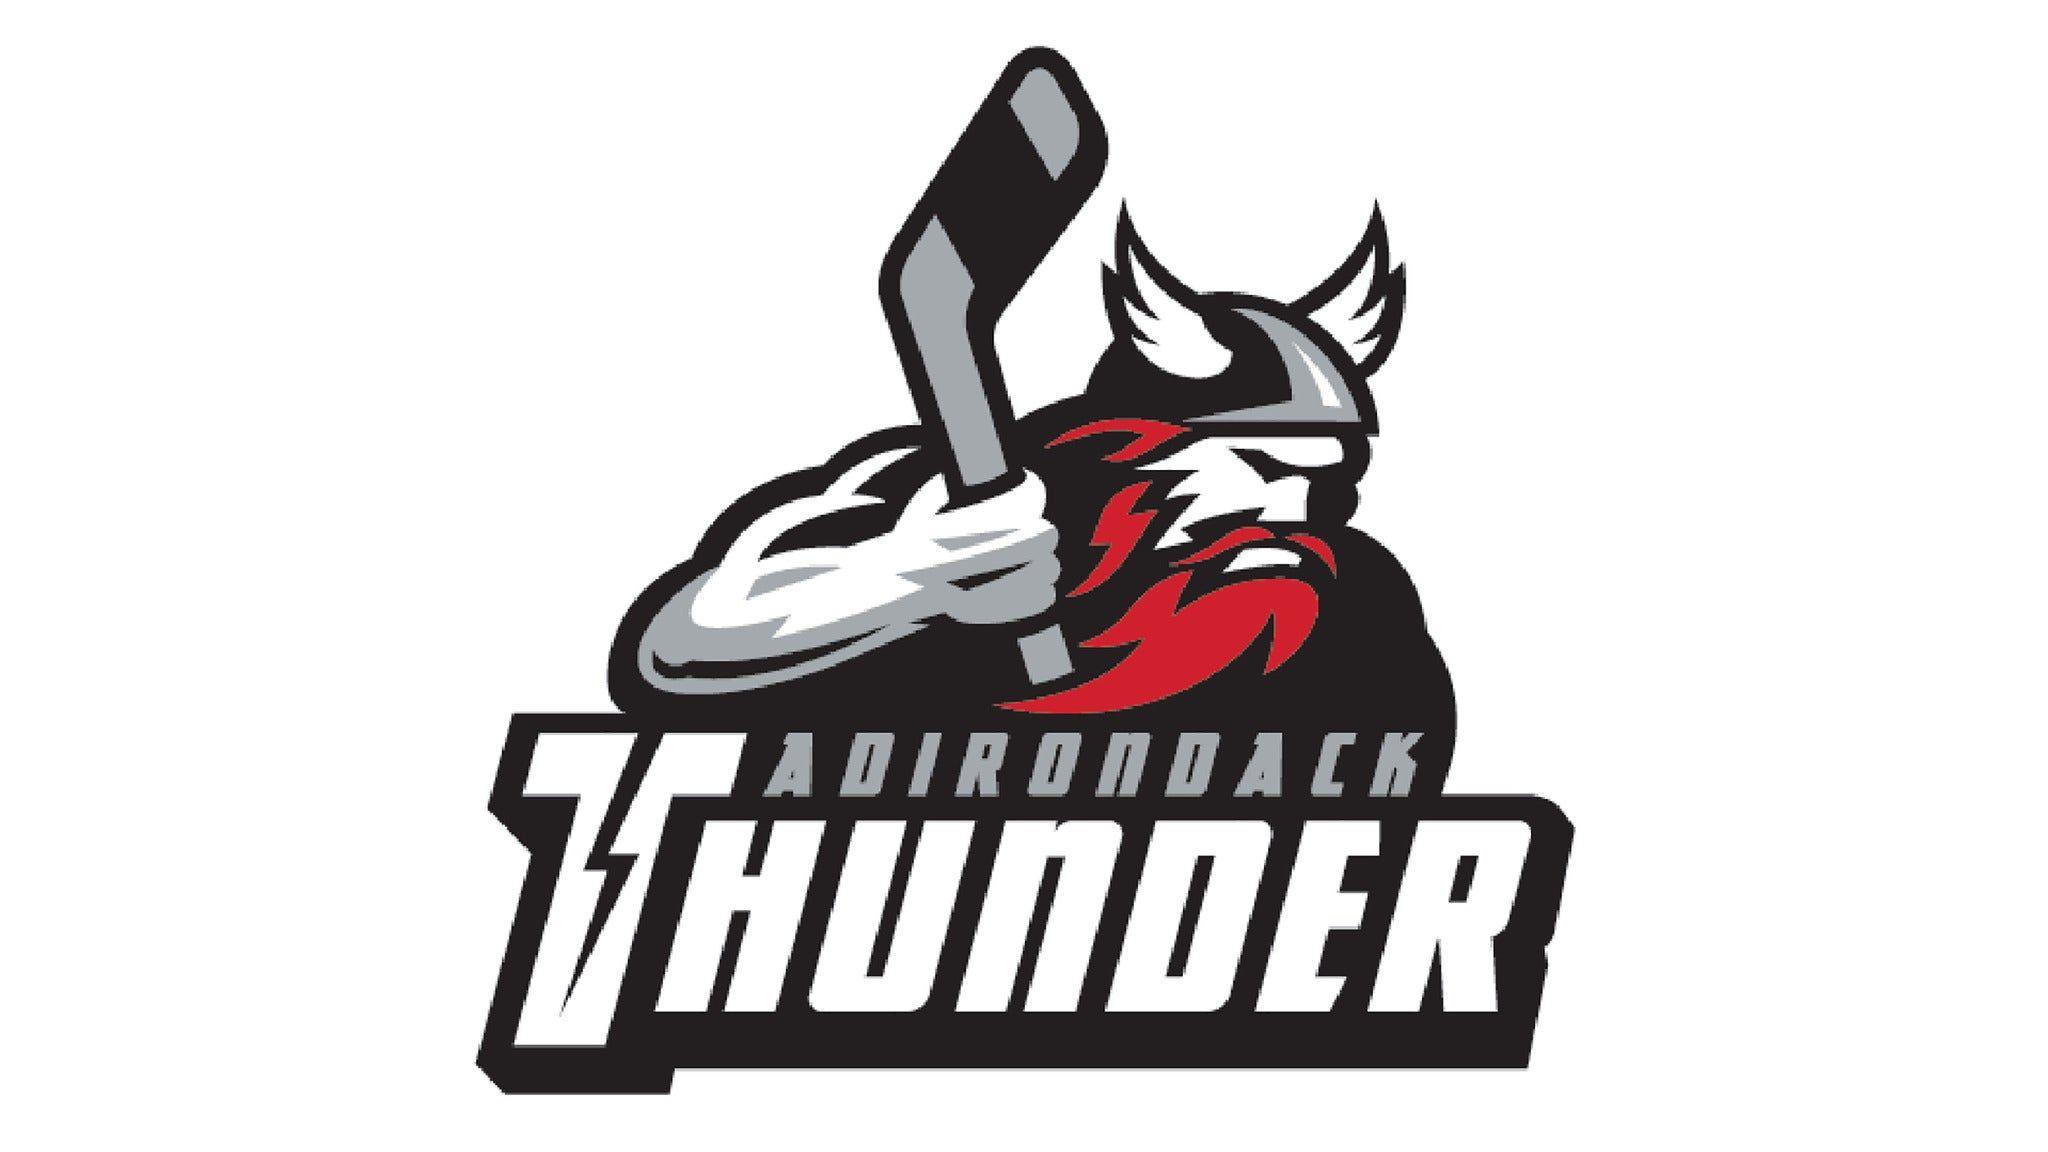 Adirondack Thunder